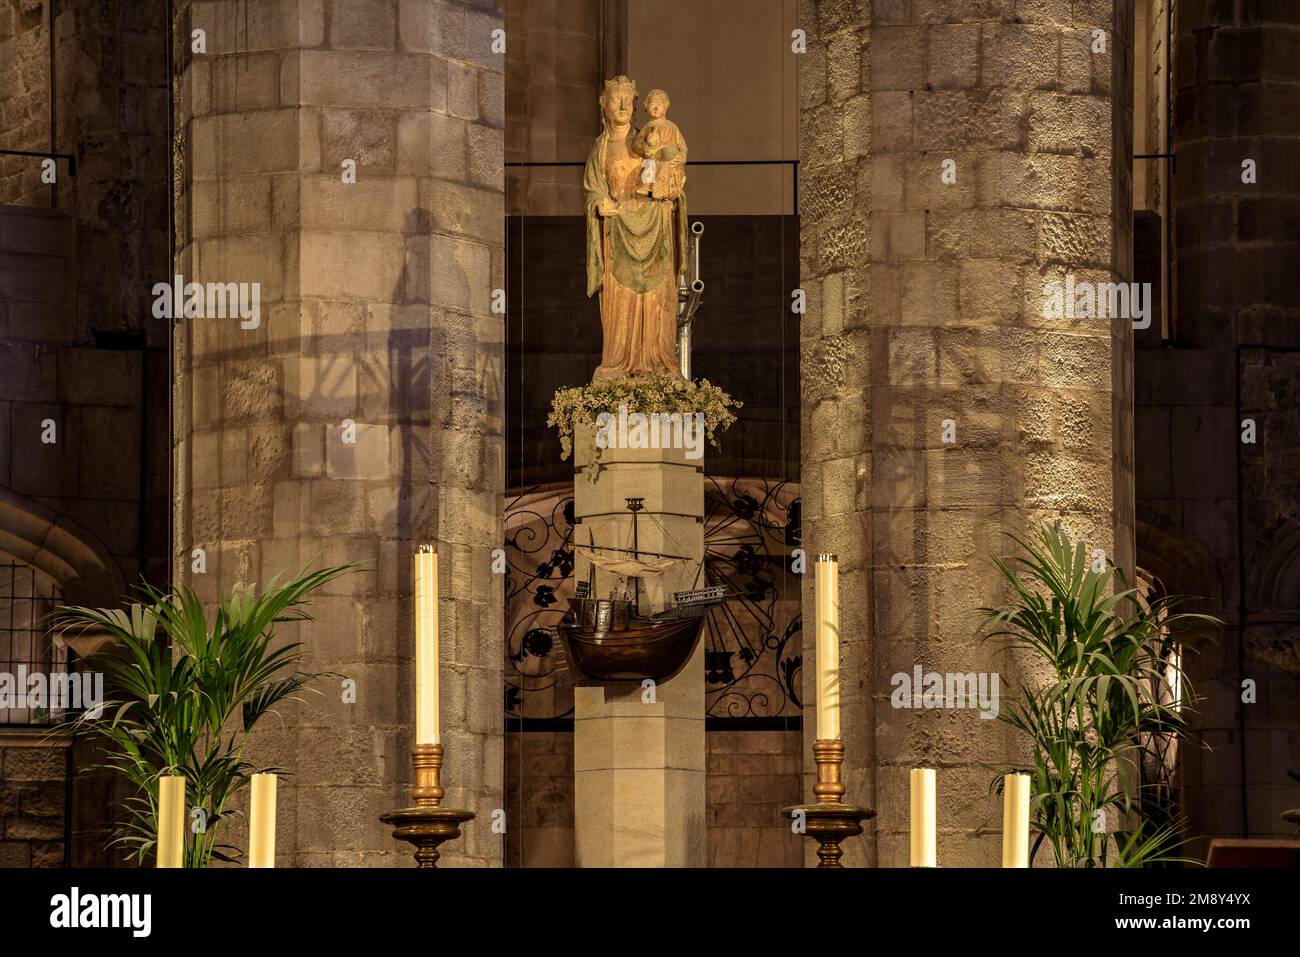 Scultura della Vergine Maria sull'altare della Basilica di Santa Maria del Mar (Barcellona, Catalogna, Spagna) ESP: Scultura de la Virgen María Foto Stock